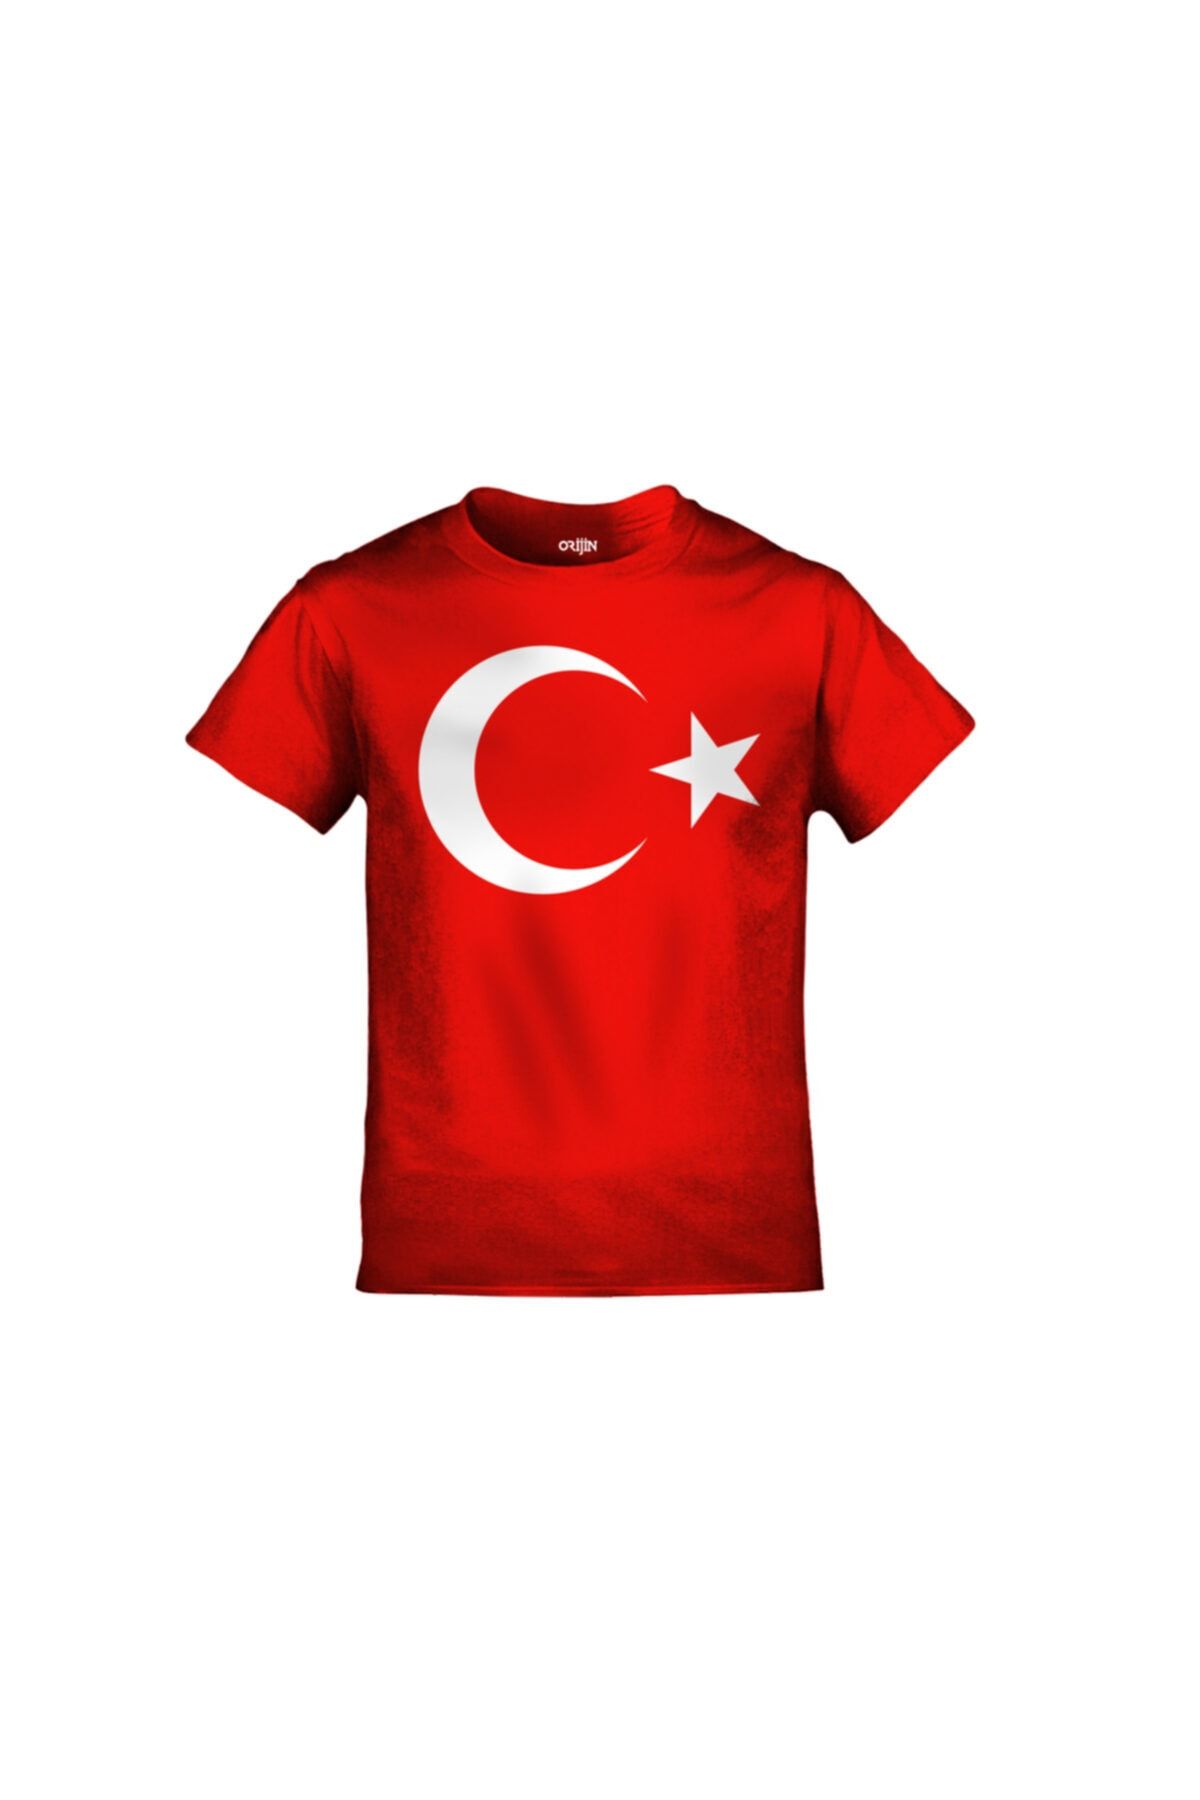 Orijin Tekstil Ay Yıldız Baskılı Türk Bayrağı Modeli Kırmızı Çocuk Tshirt